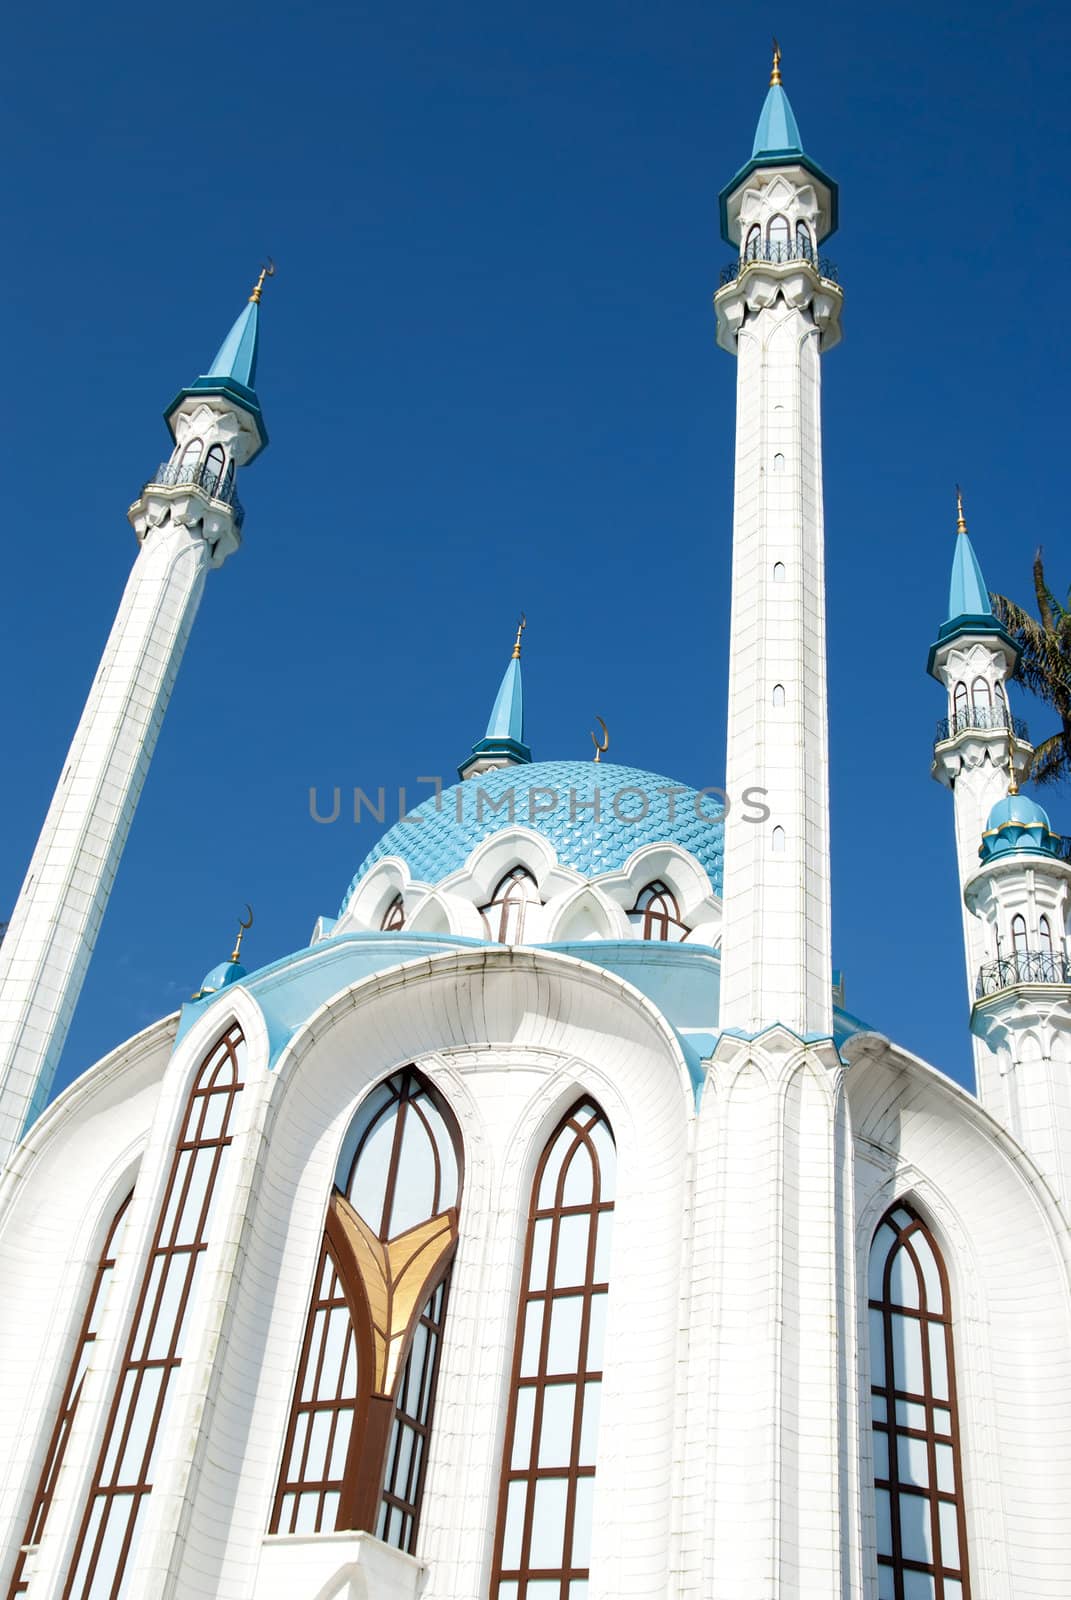 Masjid Kul Shariff in Russia by yuliang11